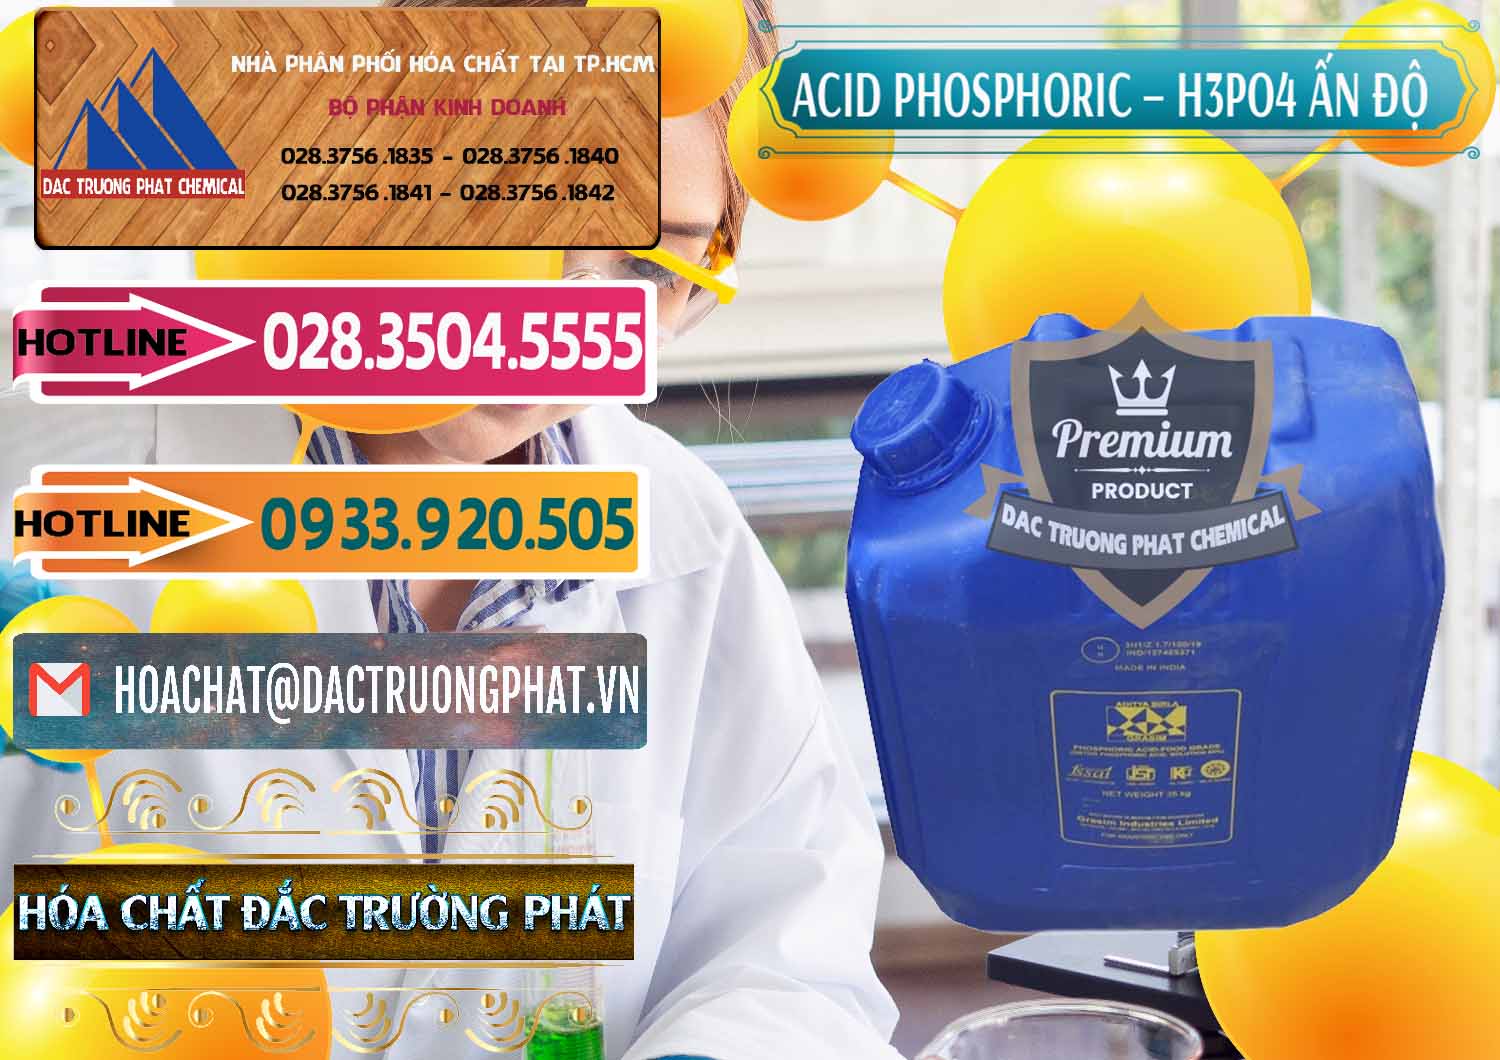 Nơi chuyên bán & cung ứng Axit Phosphoric H3PO4 85% Ấn Độ - 0350 - Cty phân phối và kinh doanh hóa chất tại TP.HCM - dactruongphat.vn